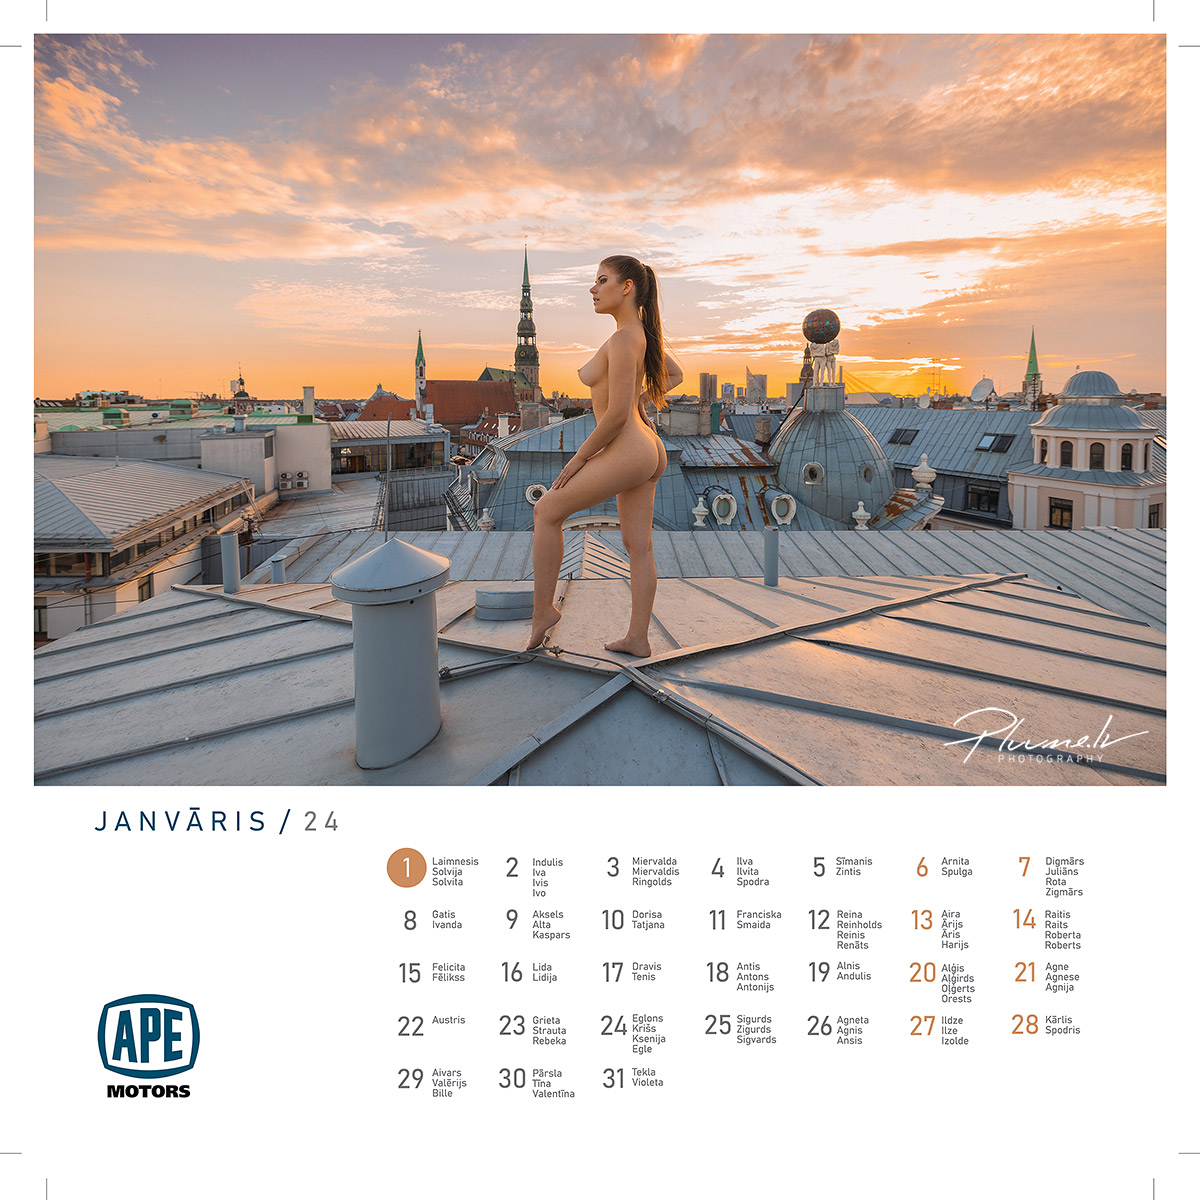 Mārtiņš Plūme | Erotisks kailfoto mākslas kalendārs 2024 gadam, APE Motors | Kailfoto kalendars erotisks kalendars fotografs Martins Plume APE Motors 3 1